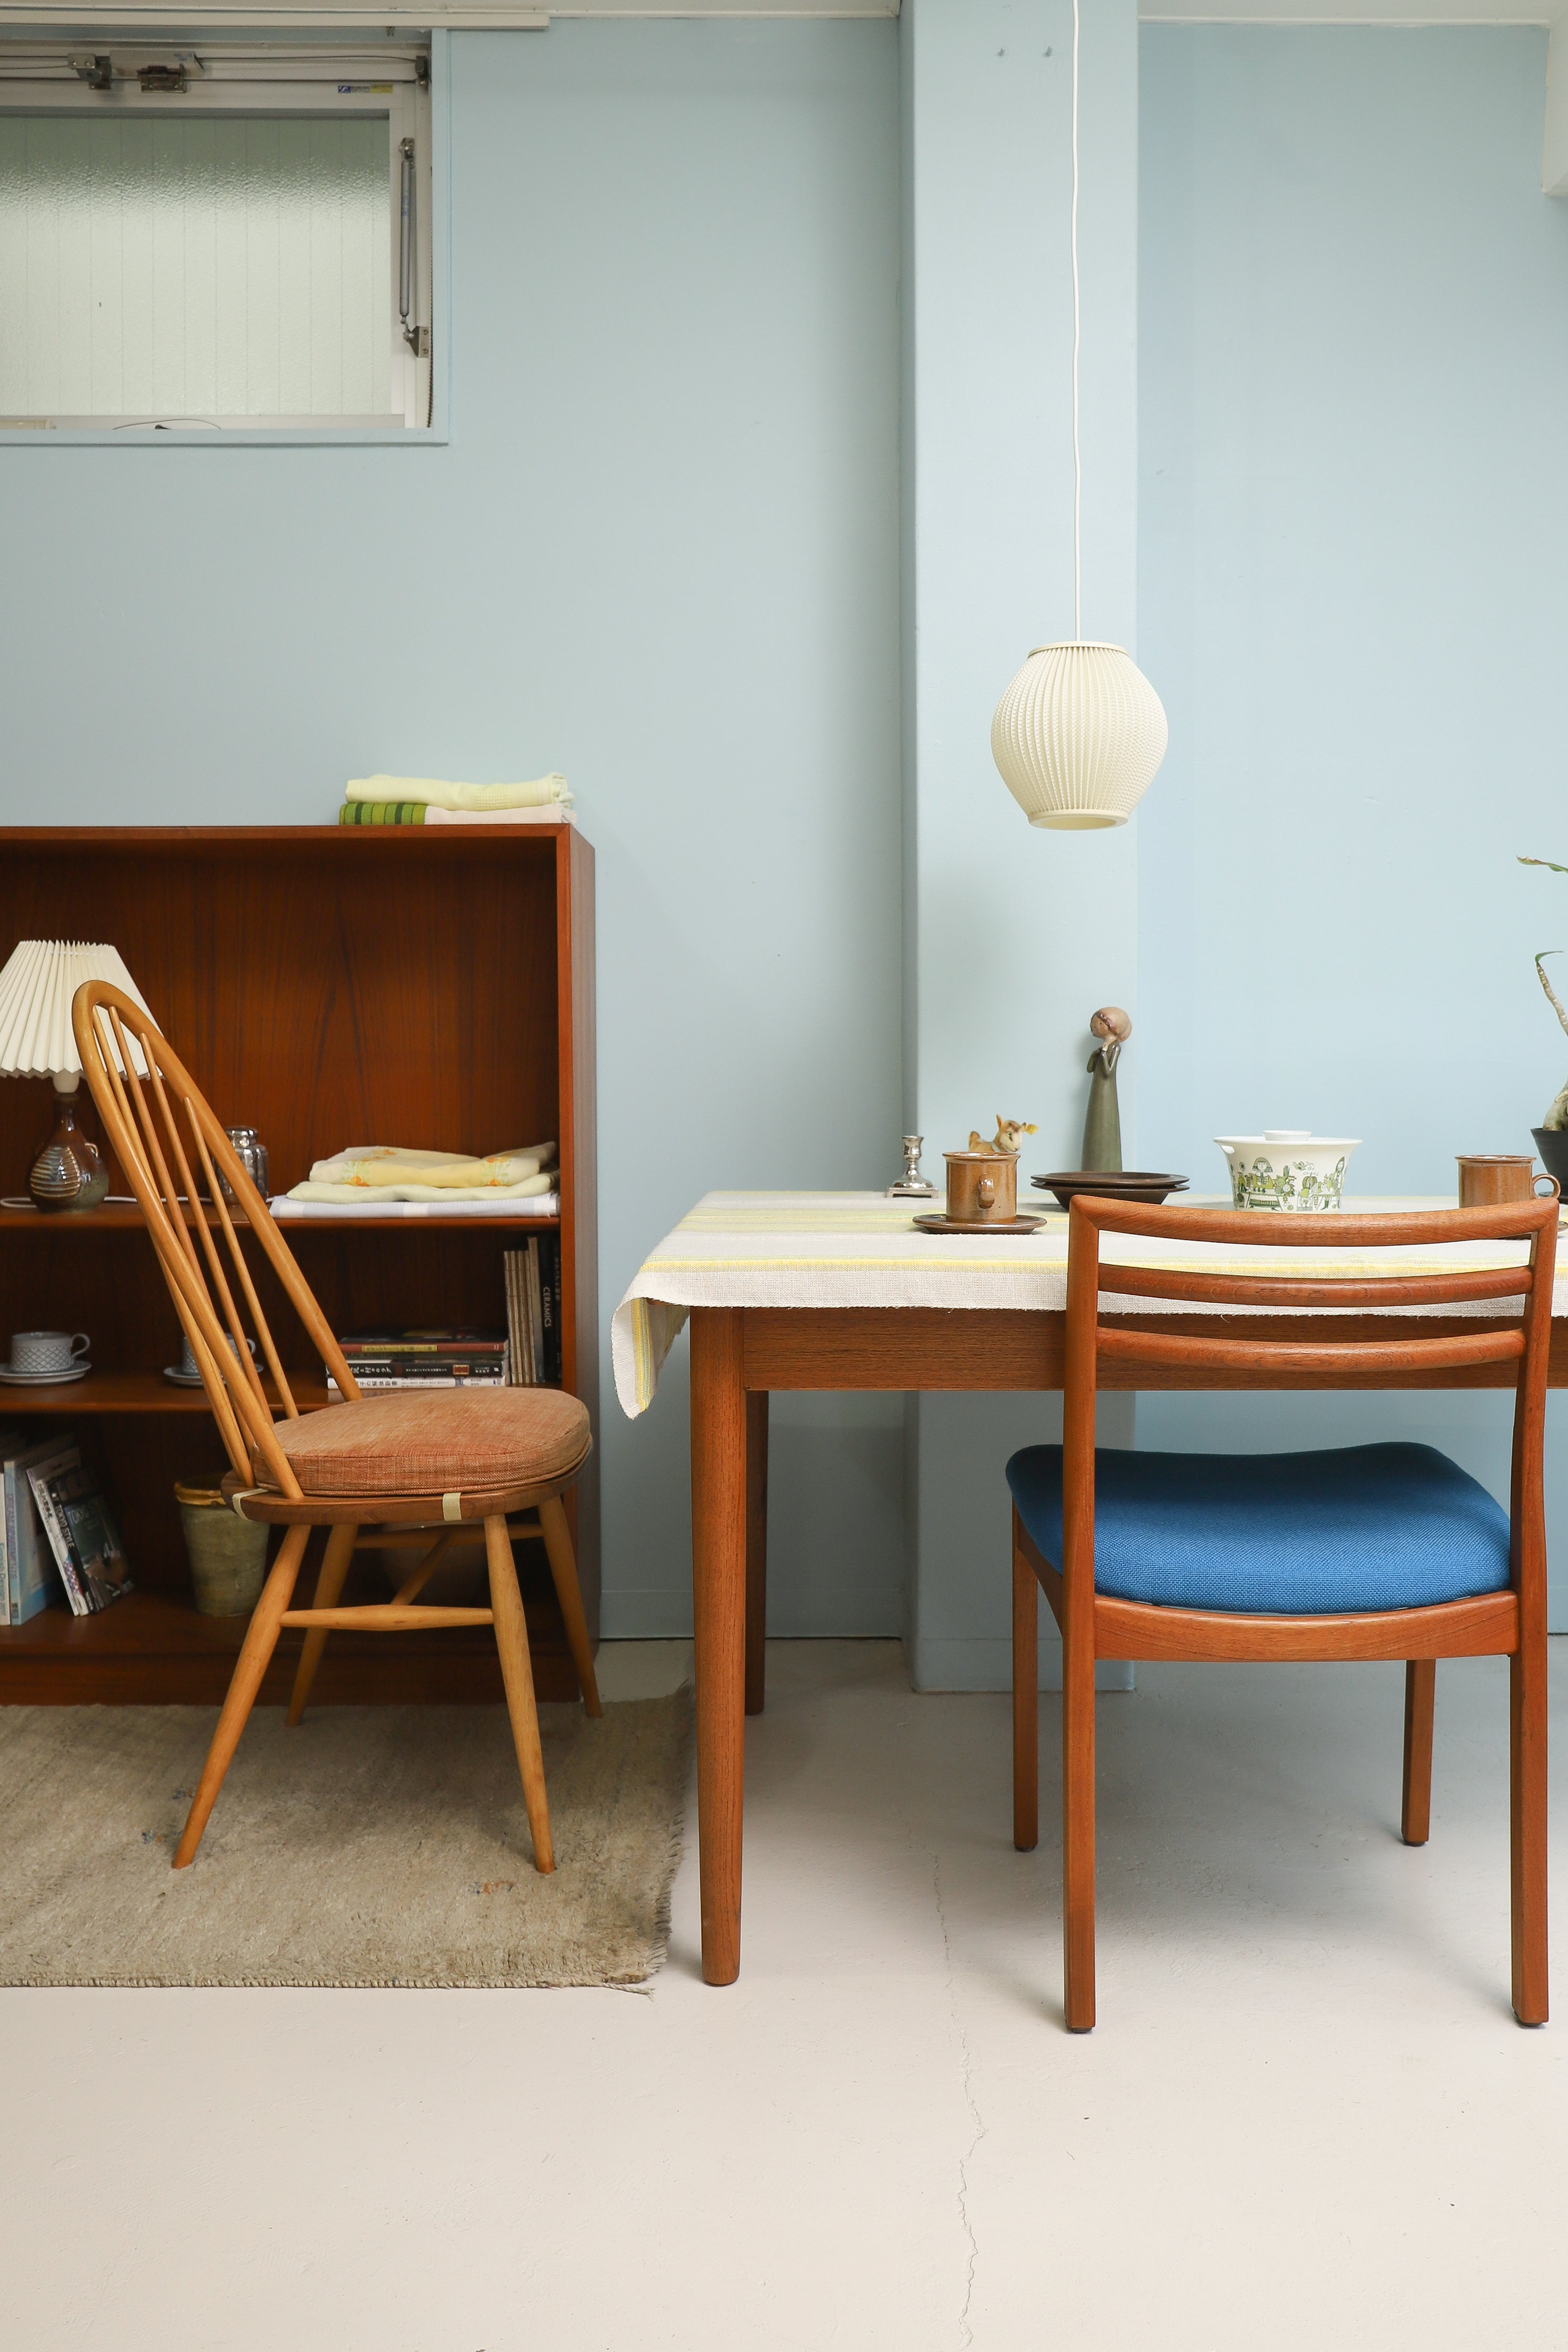 Scandinavian Vintage Table Cloth Fabric Interior/ヴィンテージ ファブリック テーブルクロス カーテン 北欧インテリア